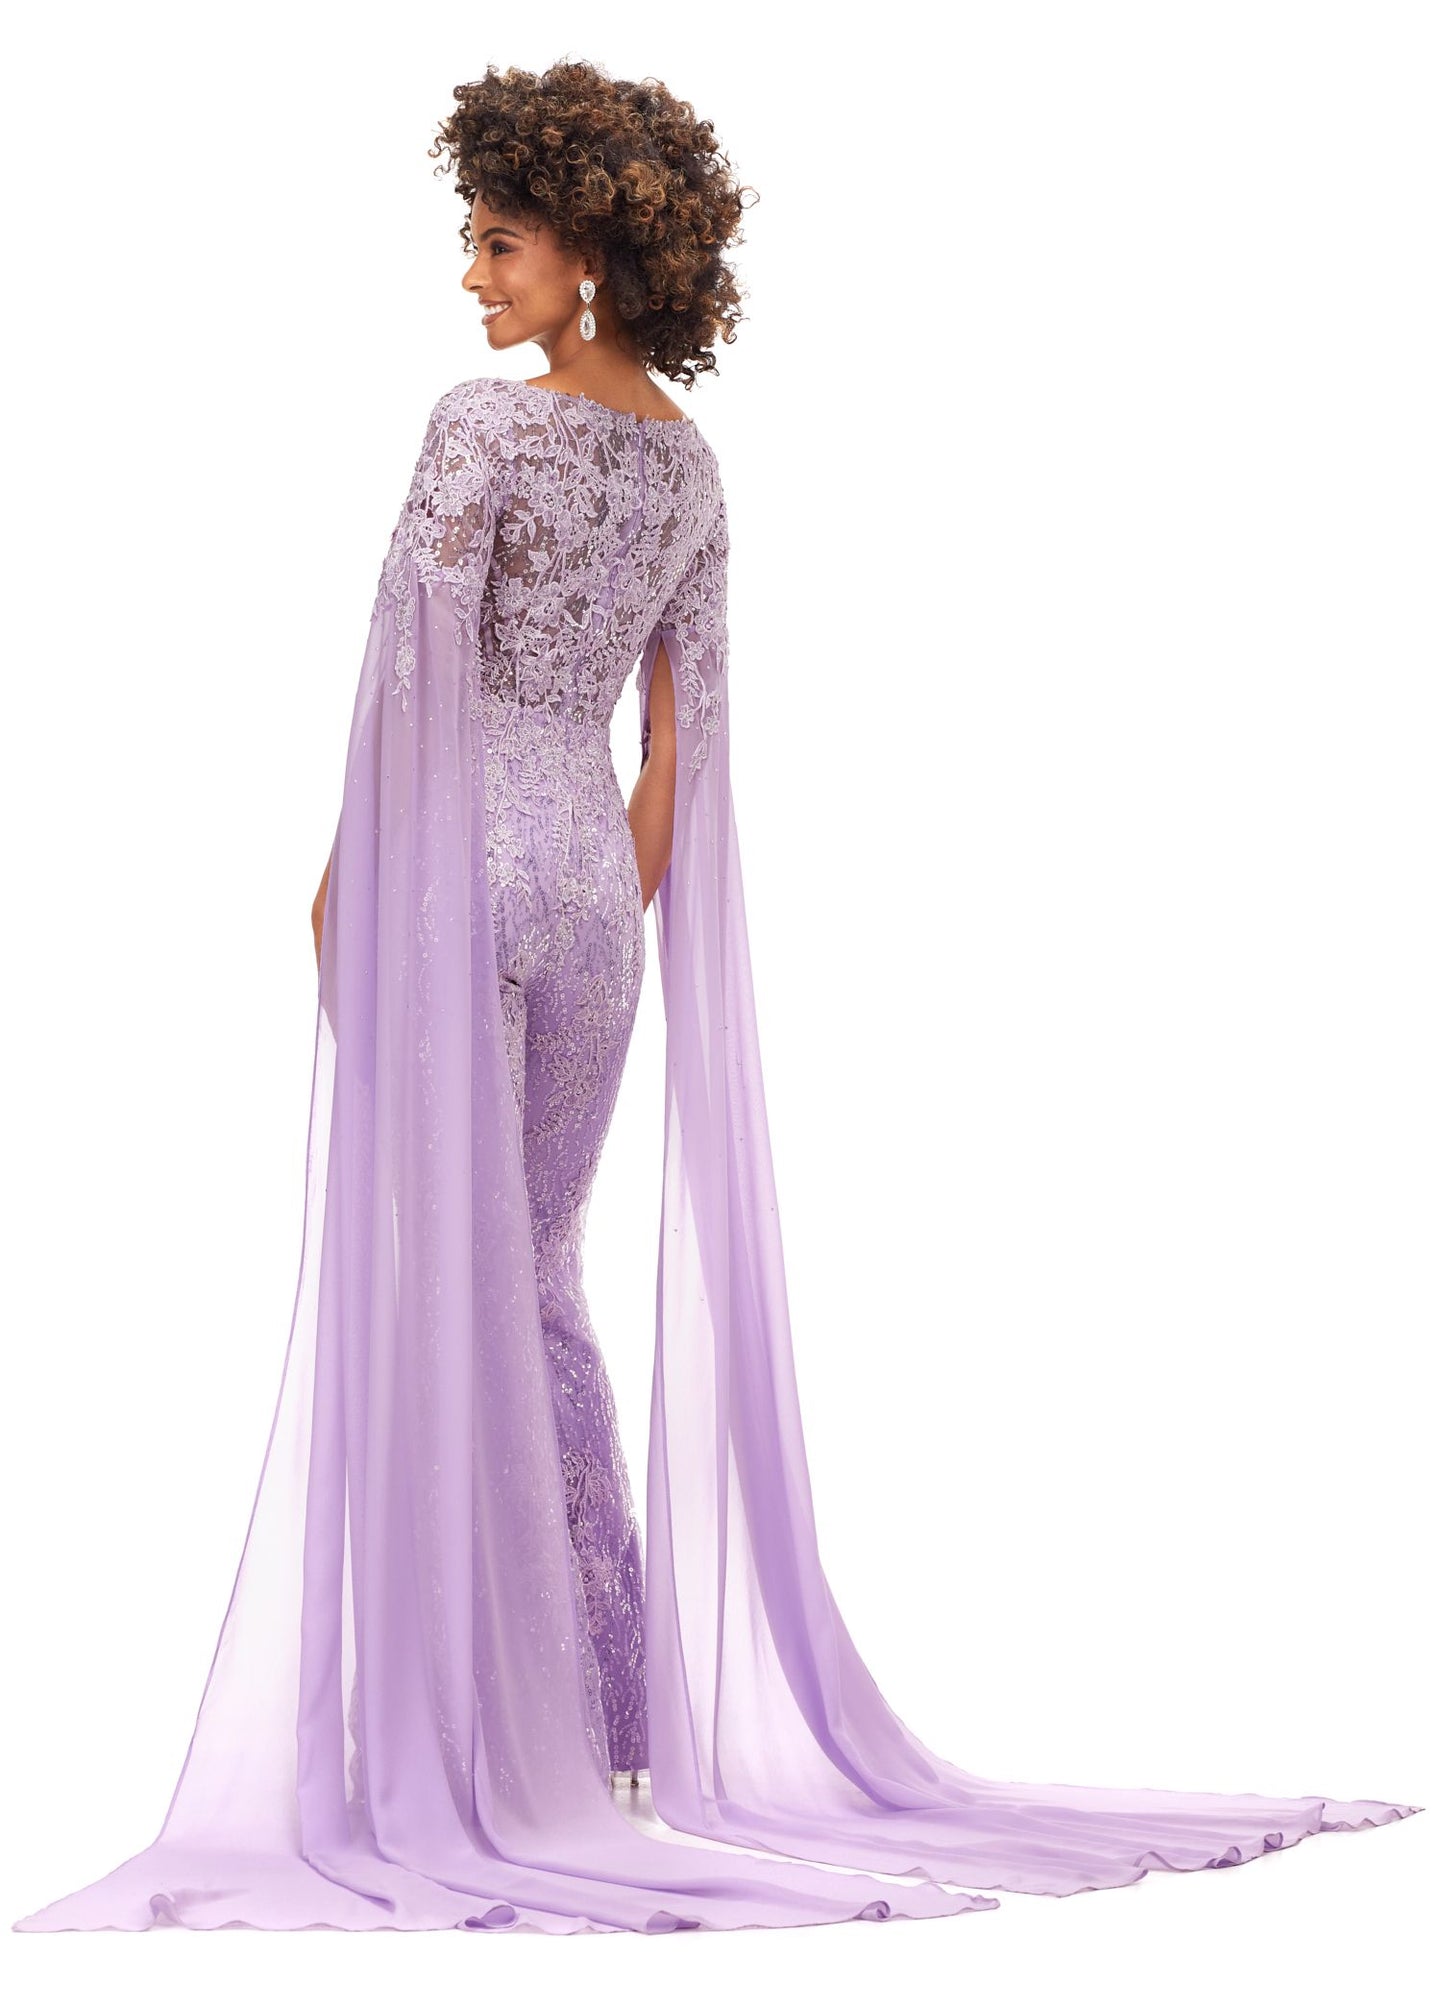 Ashley Lauren 11254 Lace Applique Pageant Jumpsuit with Chiffon Cape Sleeves